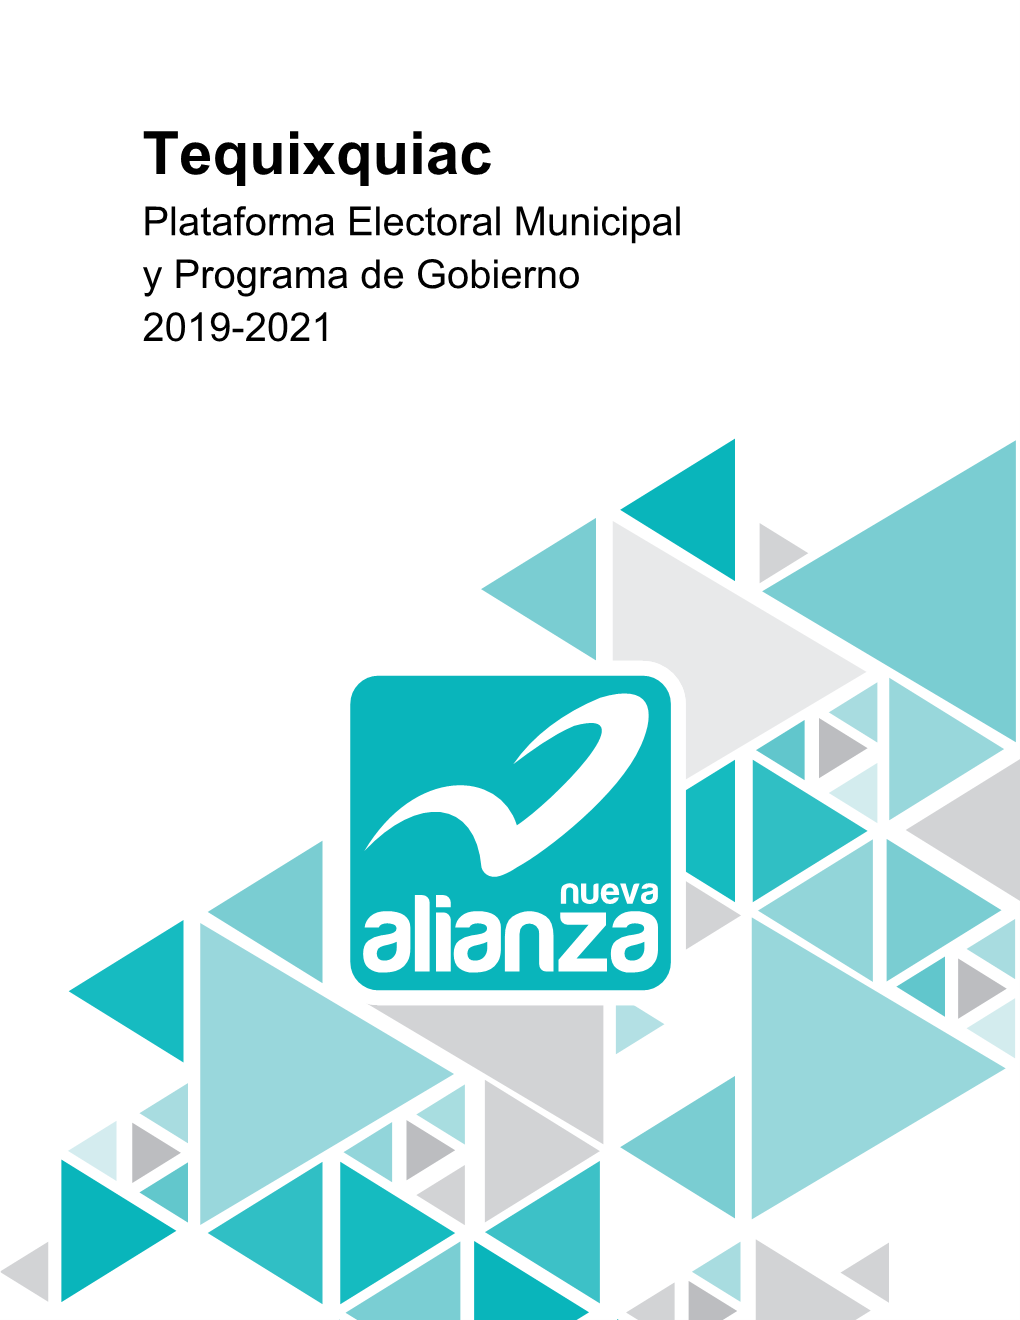 Tequixquiac Plataforma Electoral Municipal Y Programa De Gobierno 2019-2021